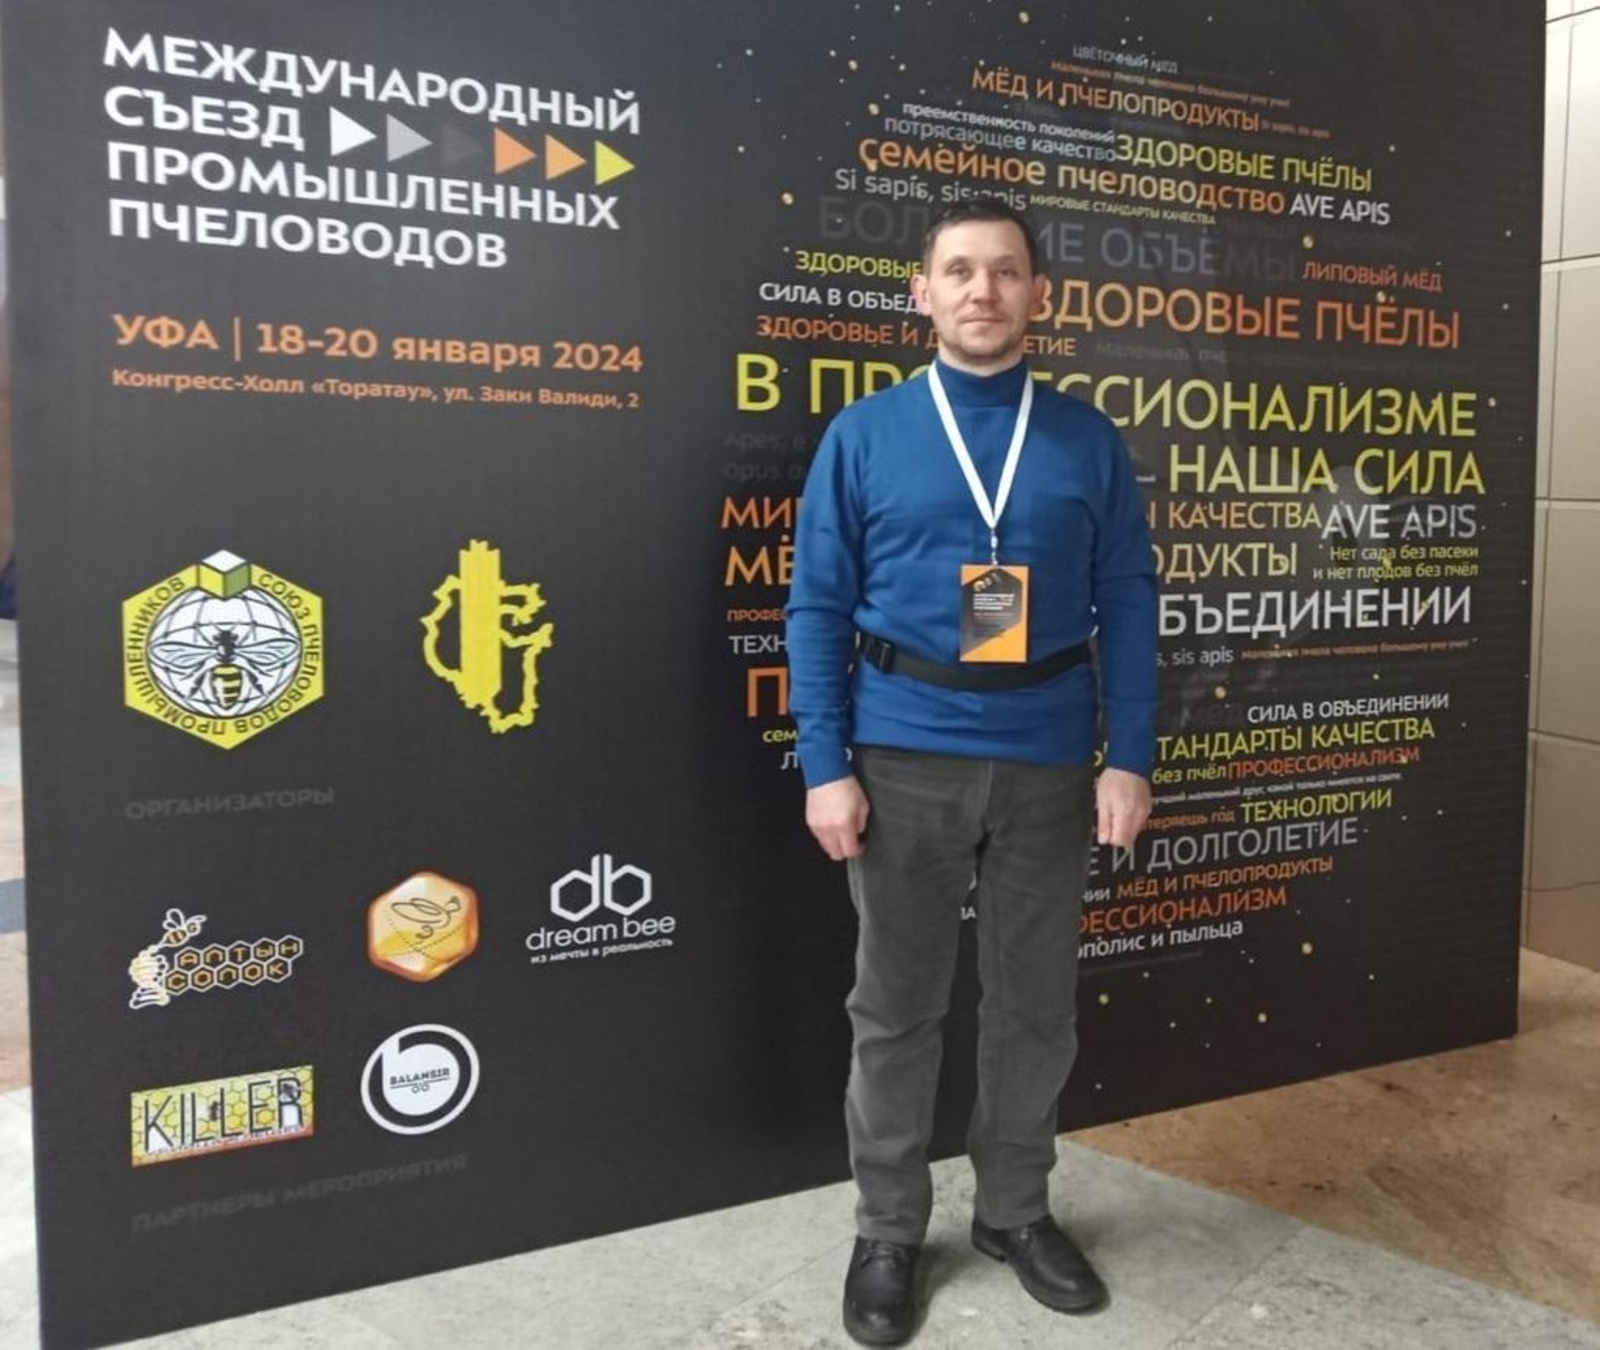 Мечетлинец принял участие в Международном съезде промышленных пчеловодов